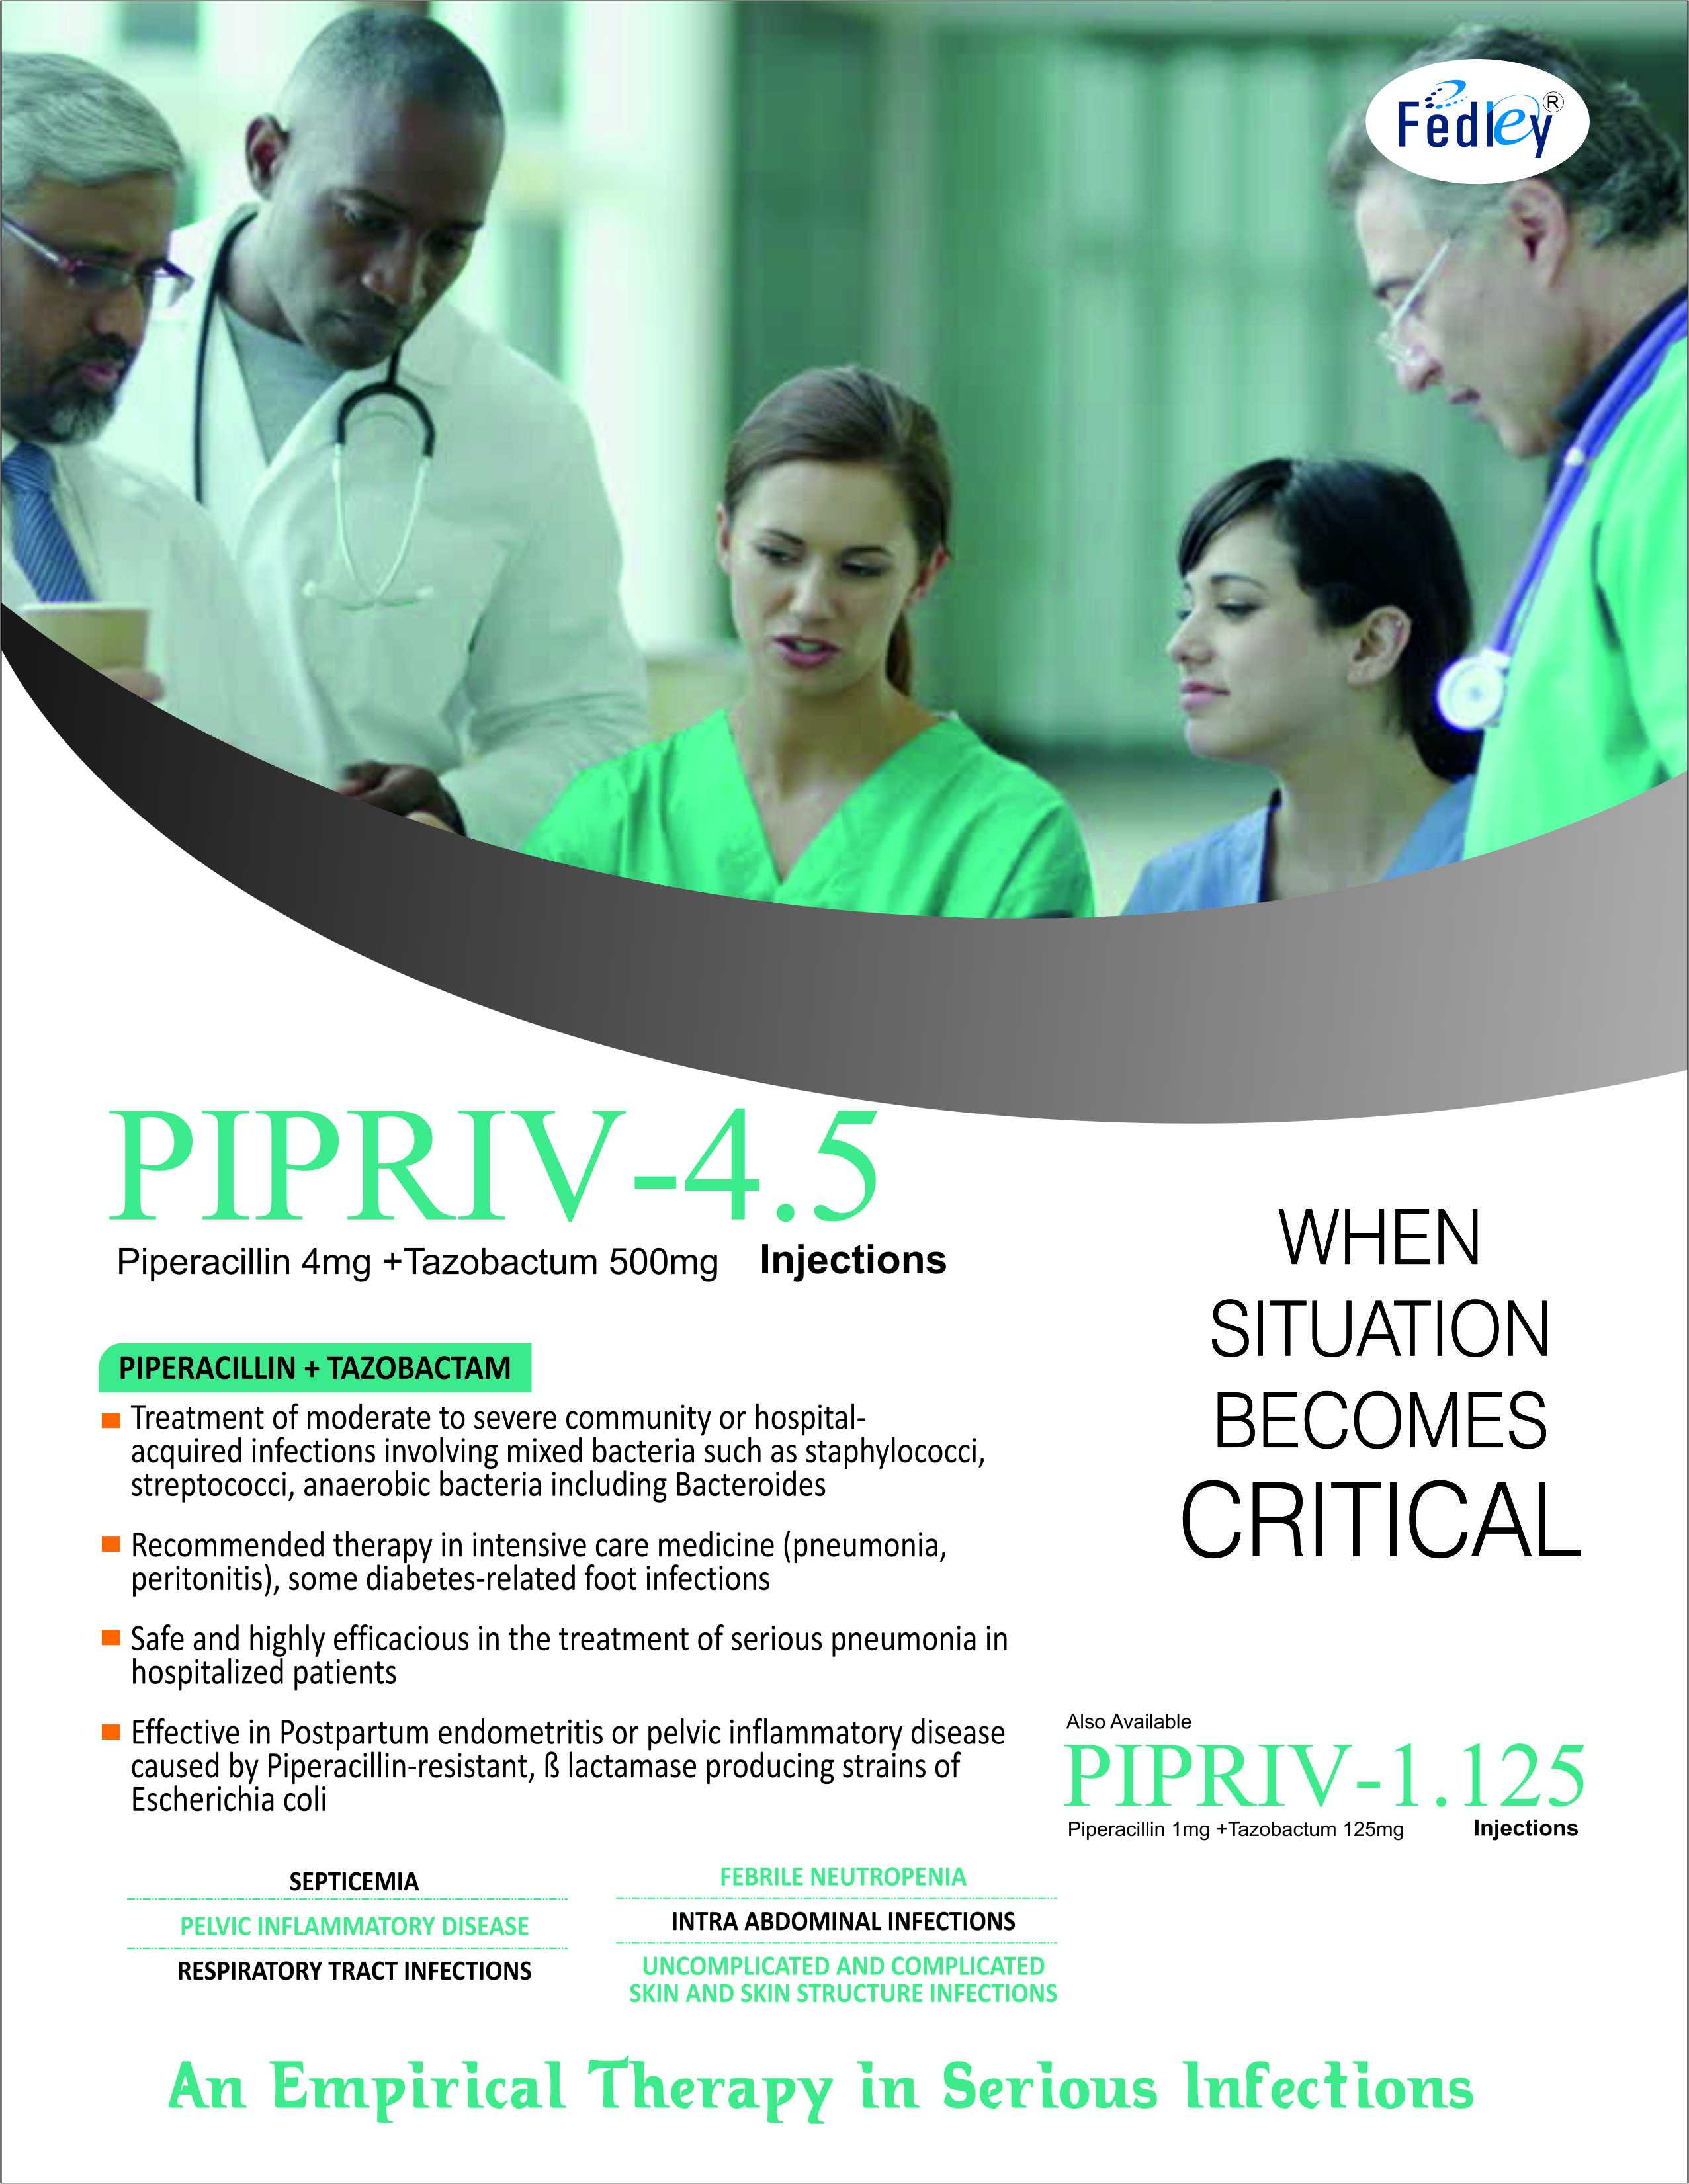 PIPRIV-4.5